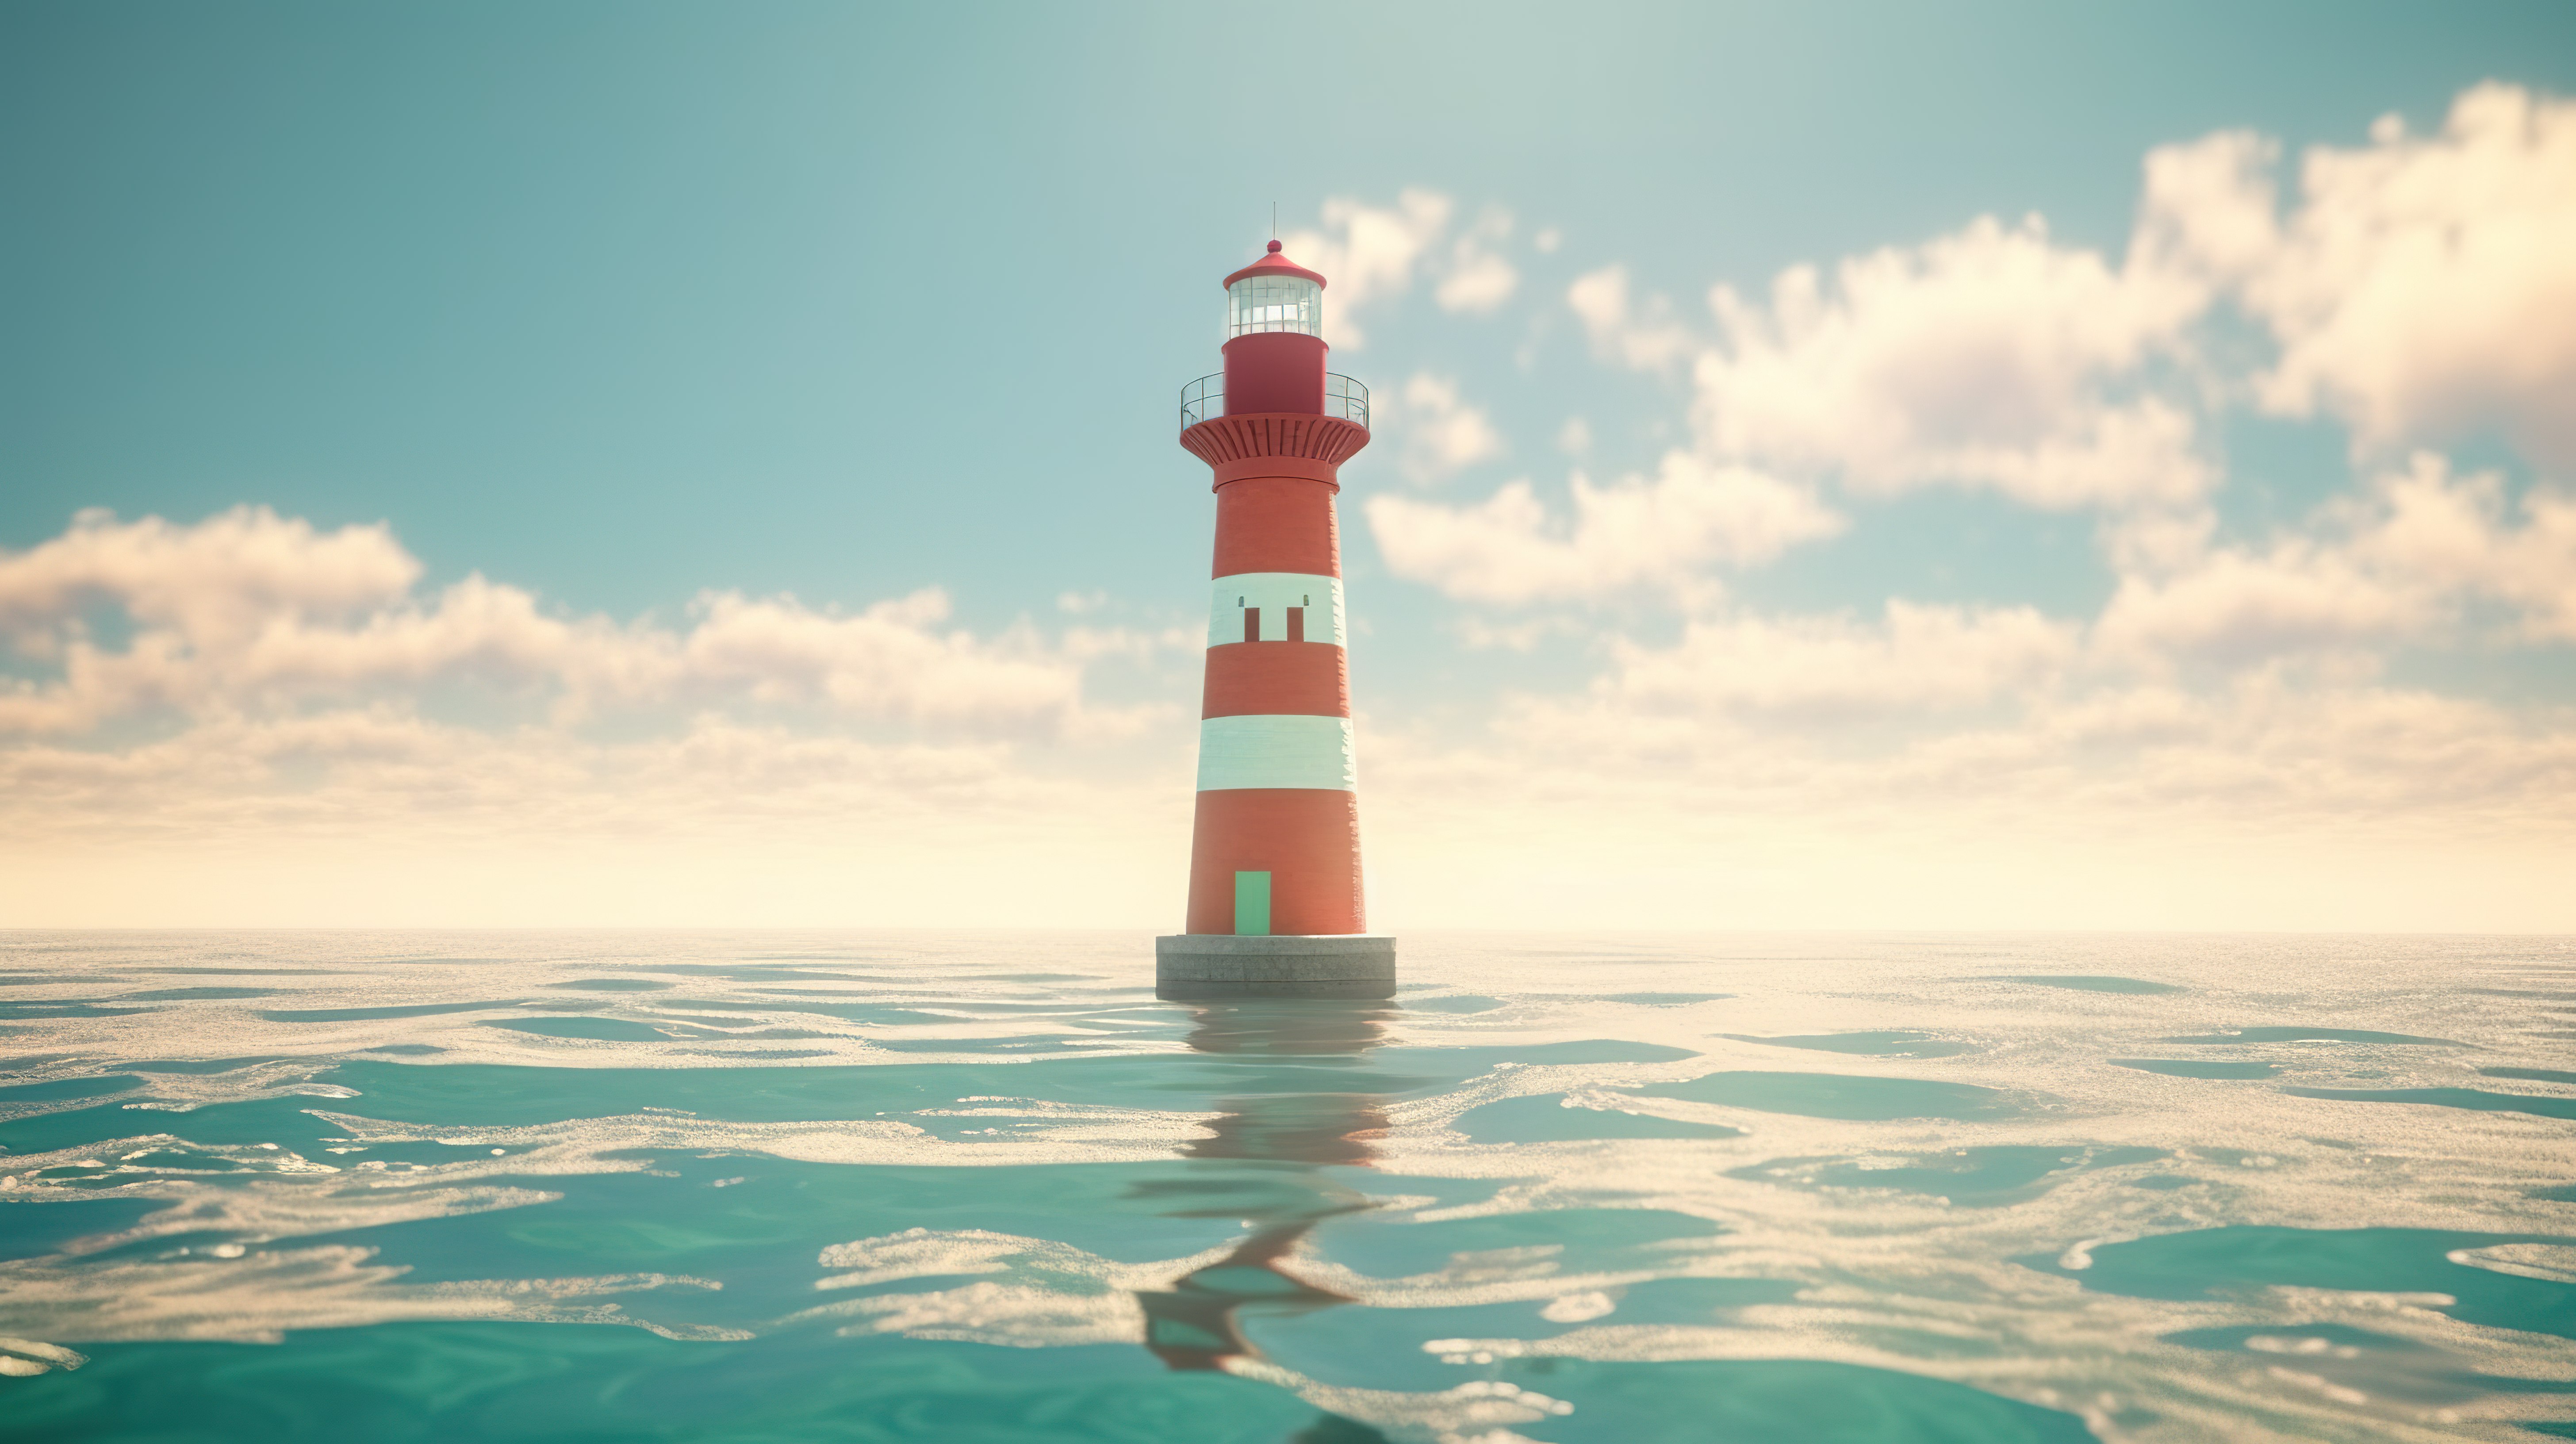 雄伟的灯塔矗立在海洋中，映衬着通过 3D 渲染创建的辉煌蓝天图片